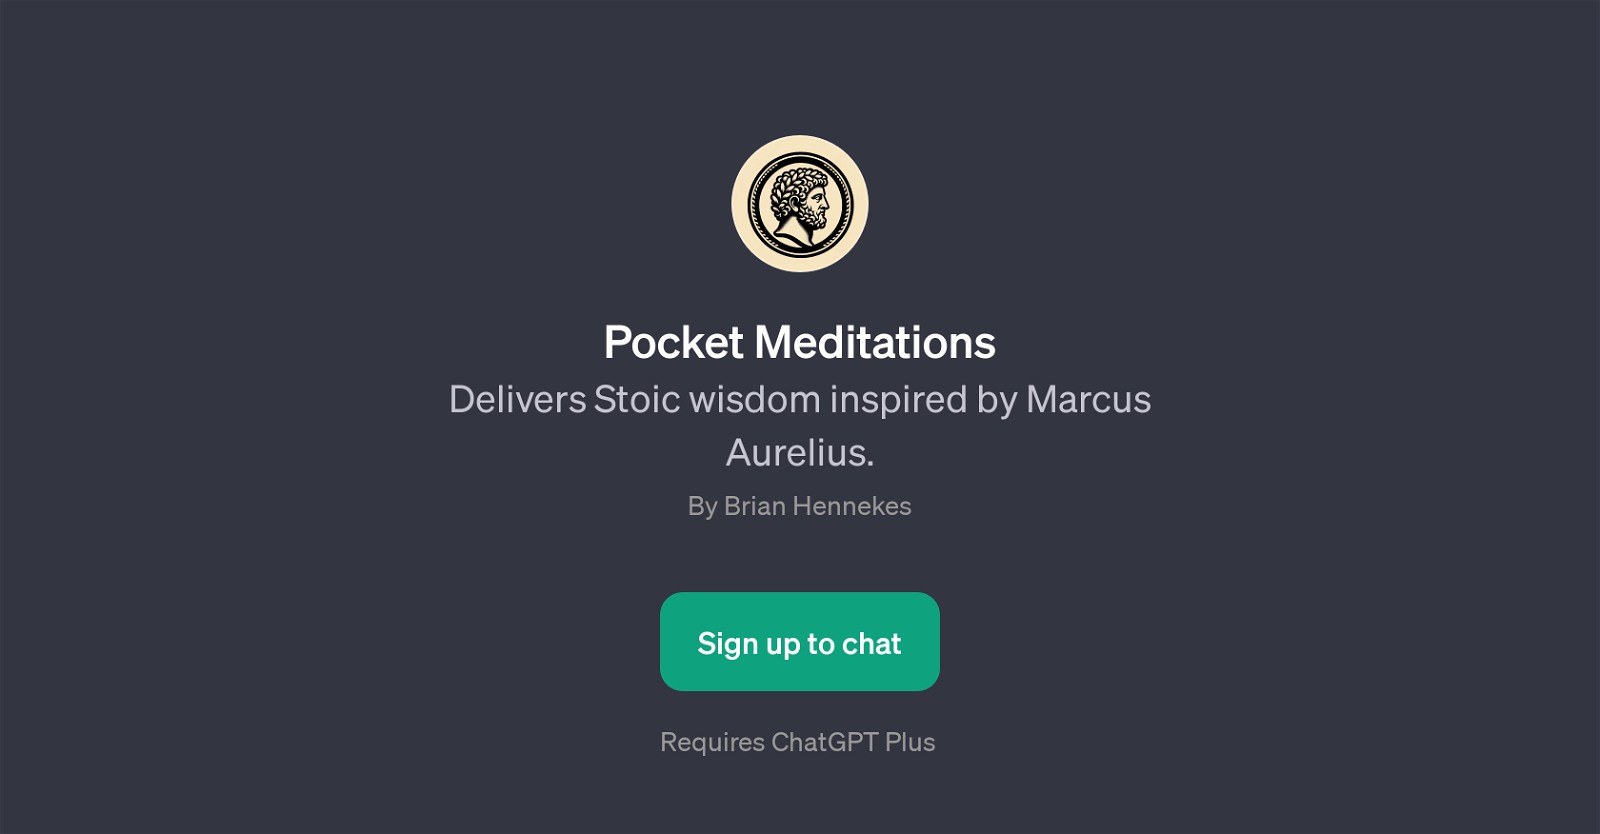 Pocket Meditations website